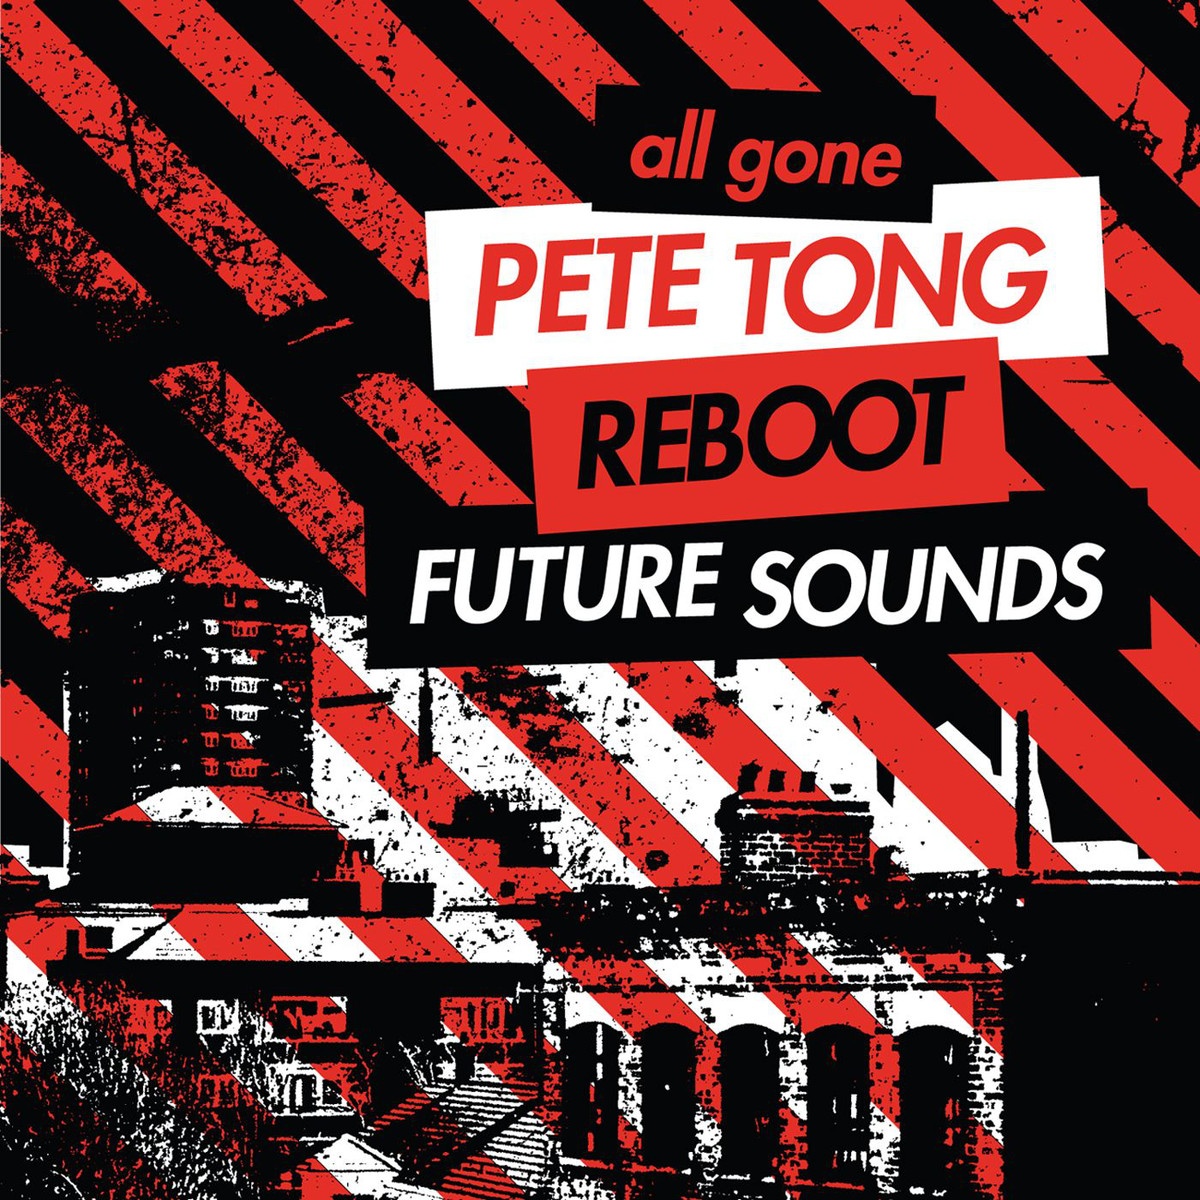 All Gone Pete Tong & Reboot Future Sounds (Reboot Bonus Mix)